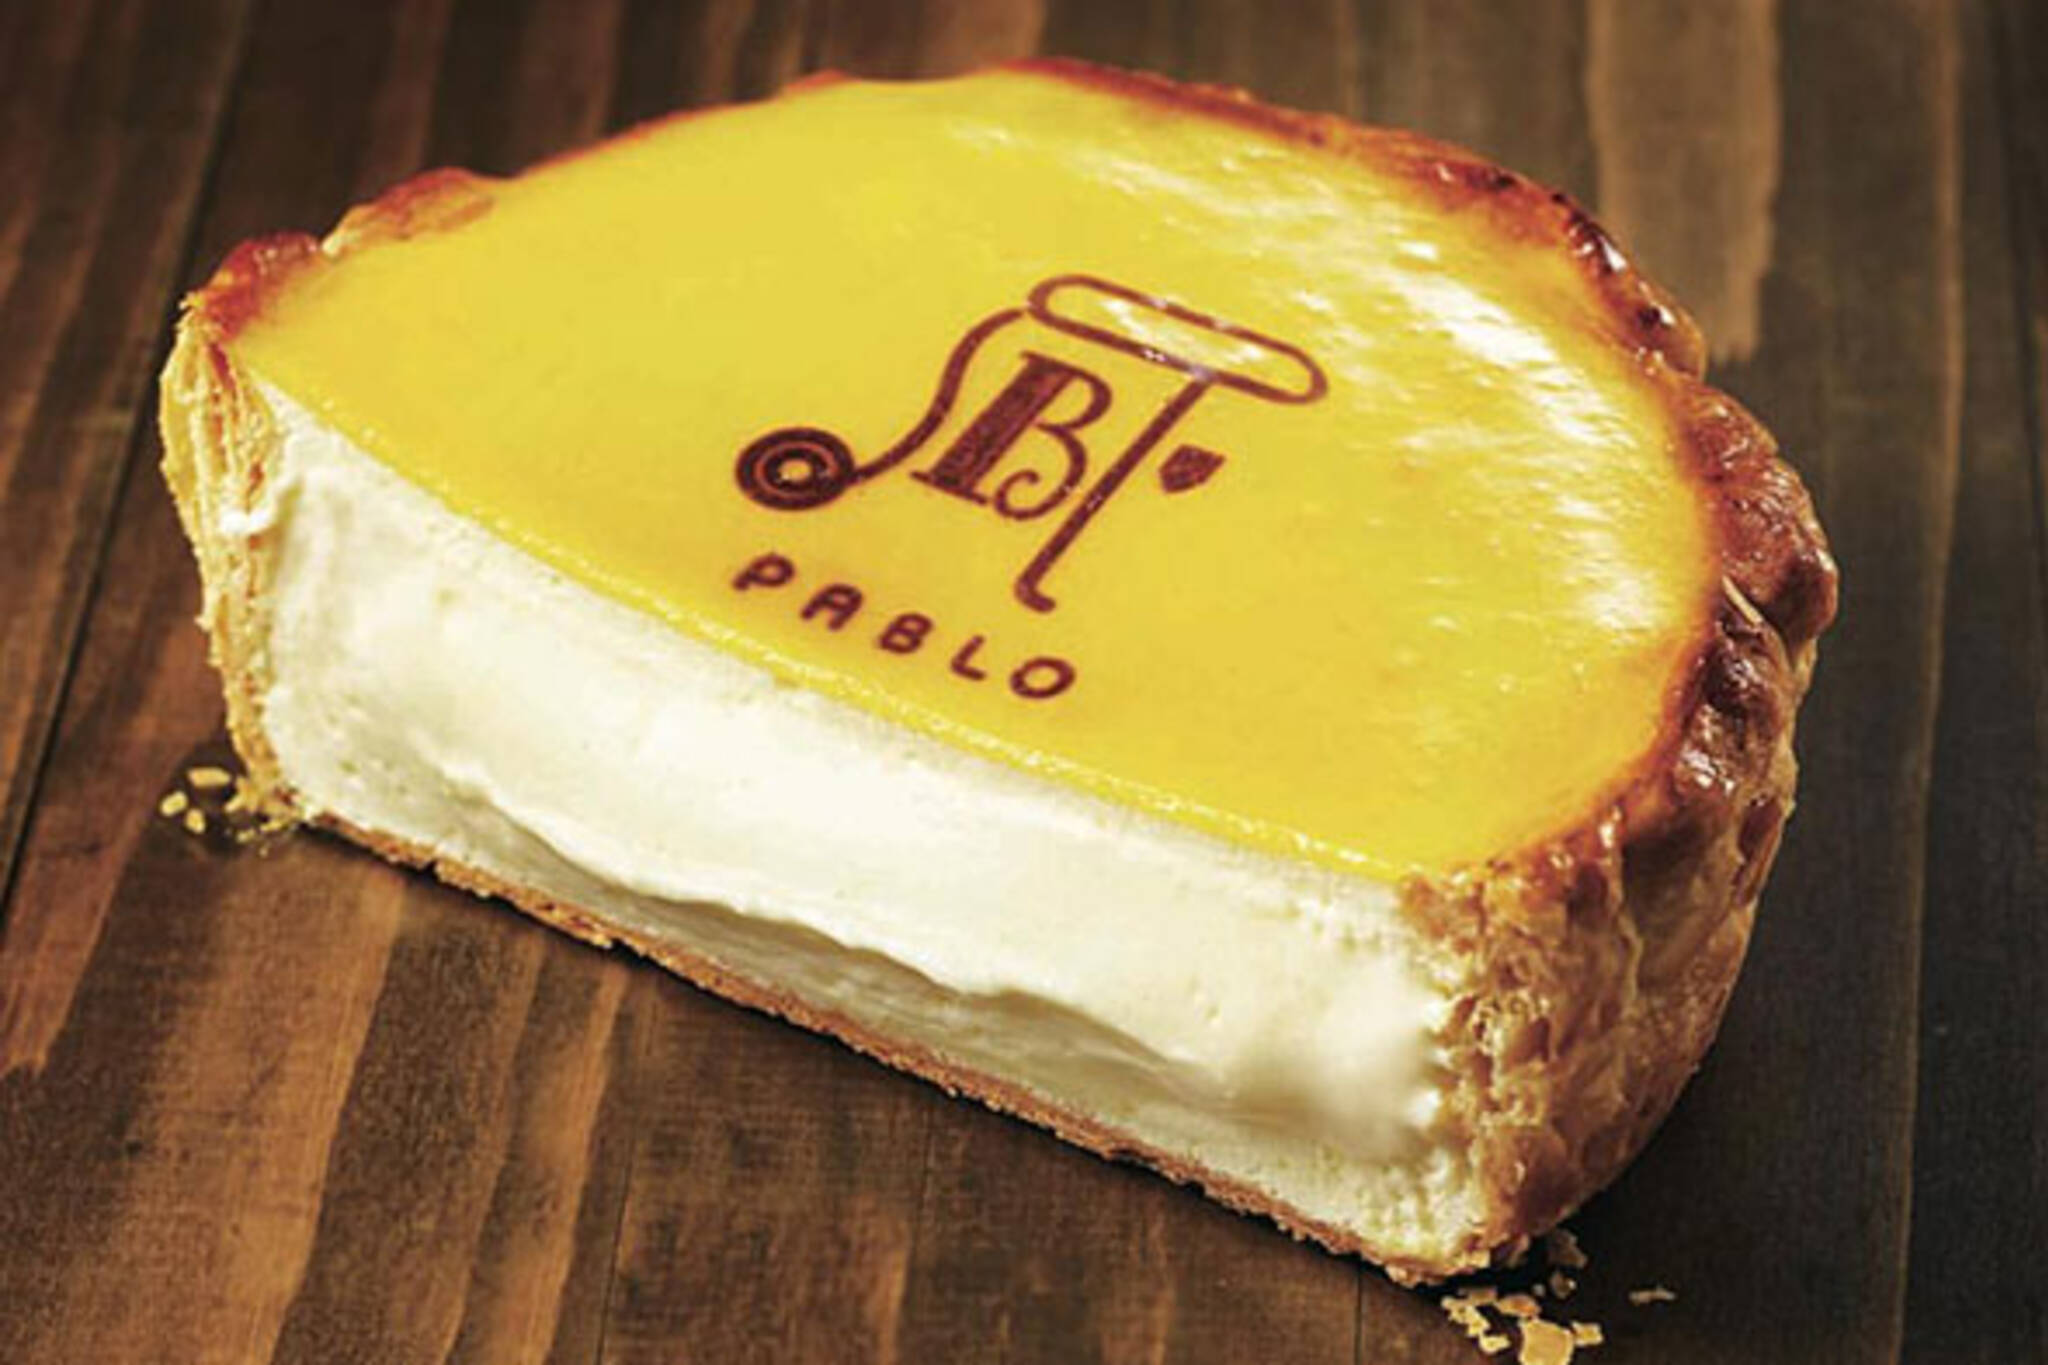 pablo cheese tart toronto